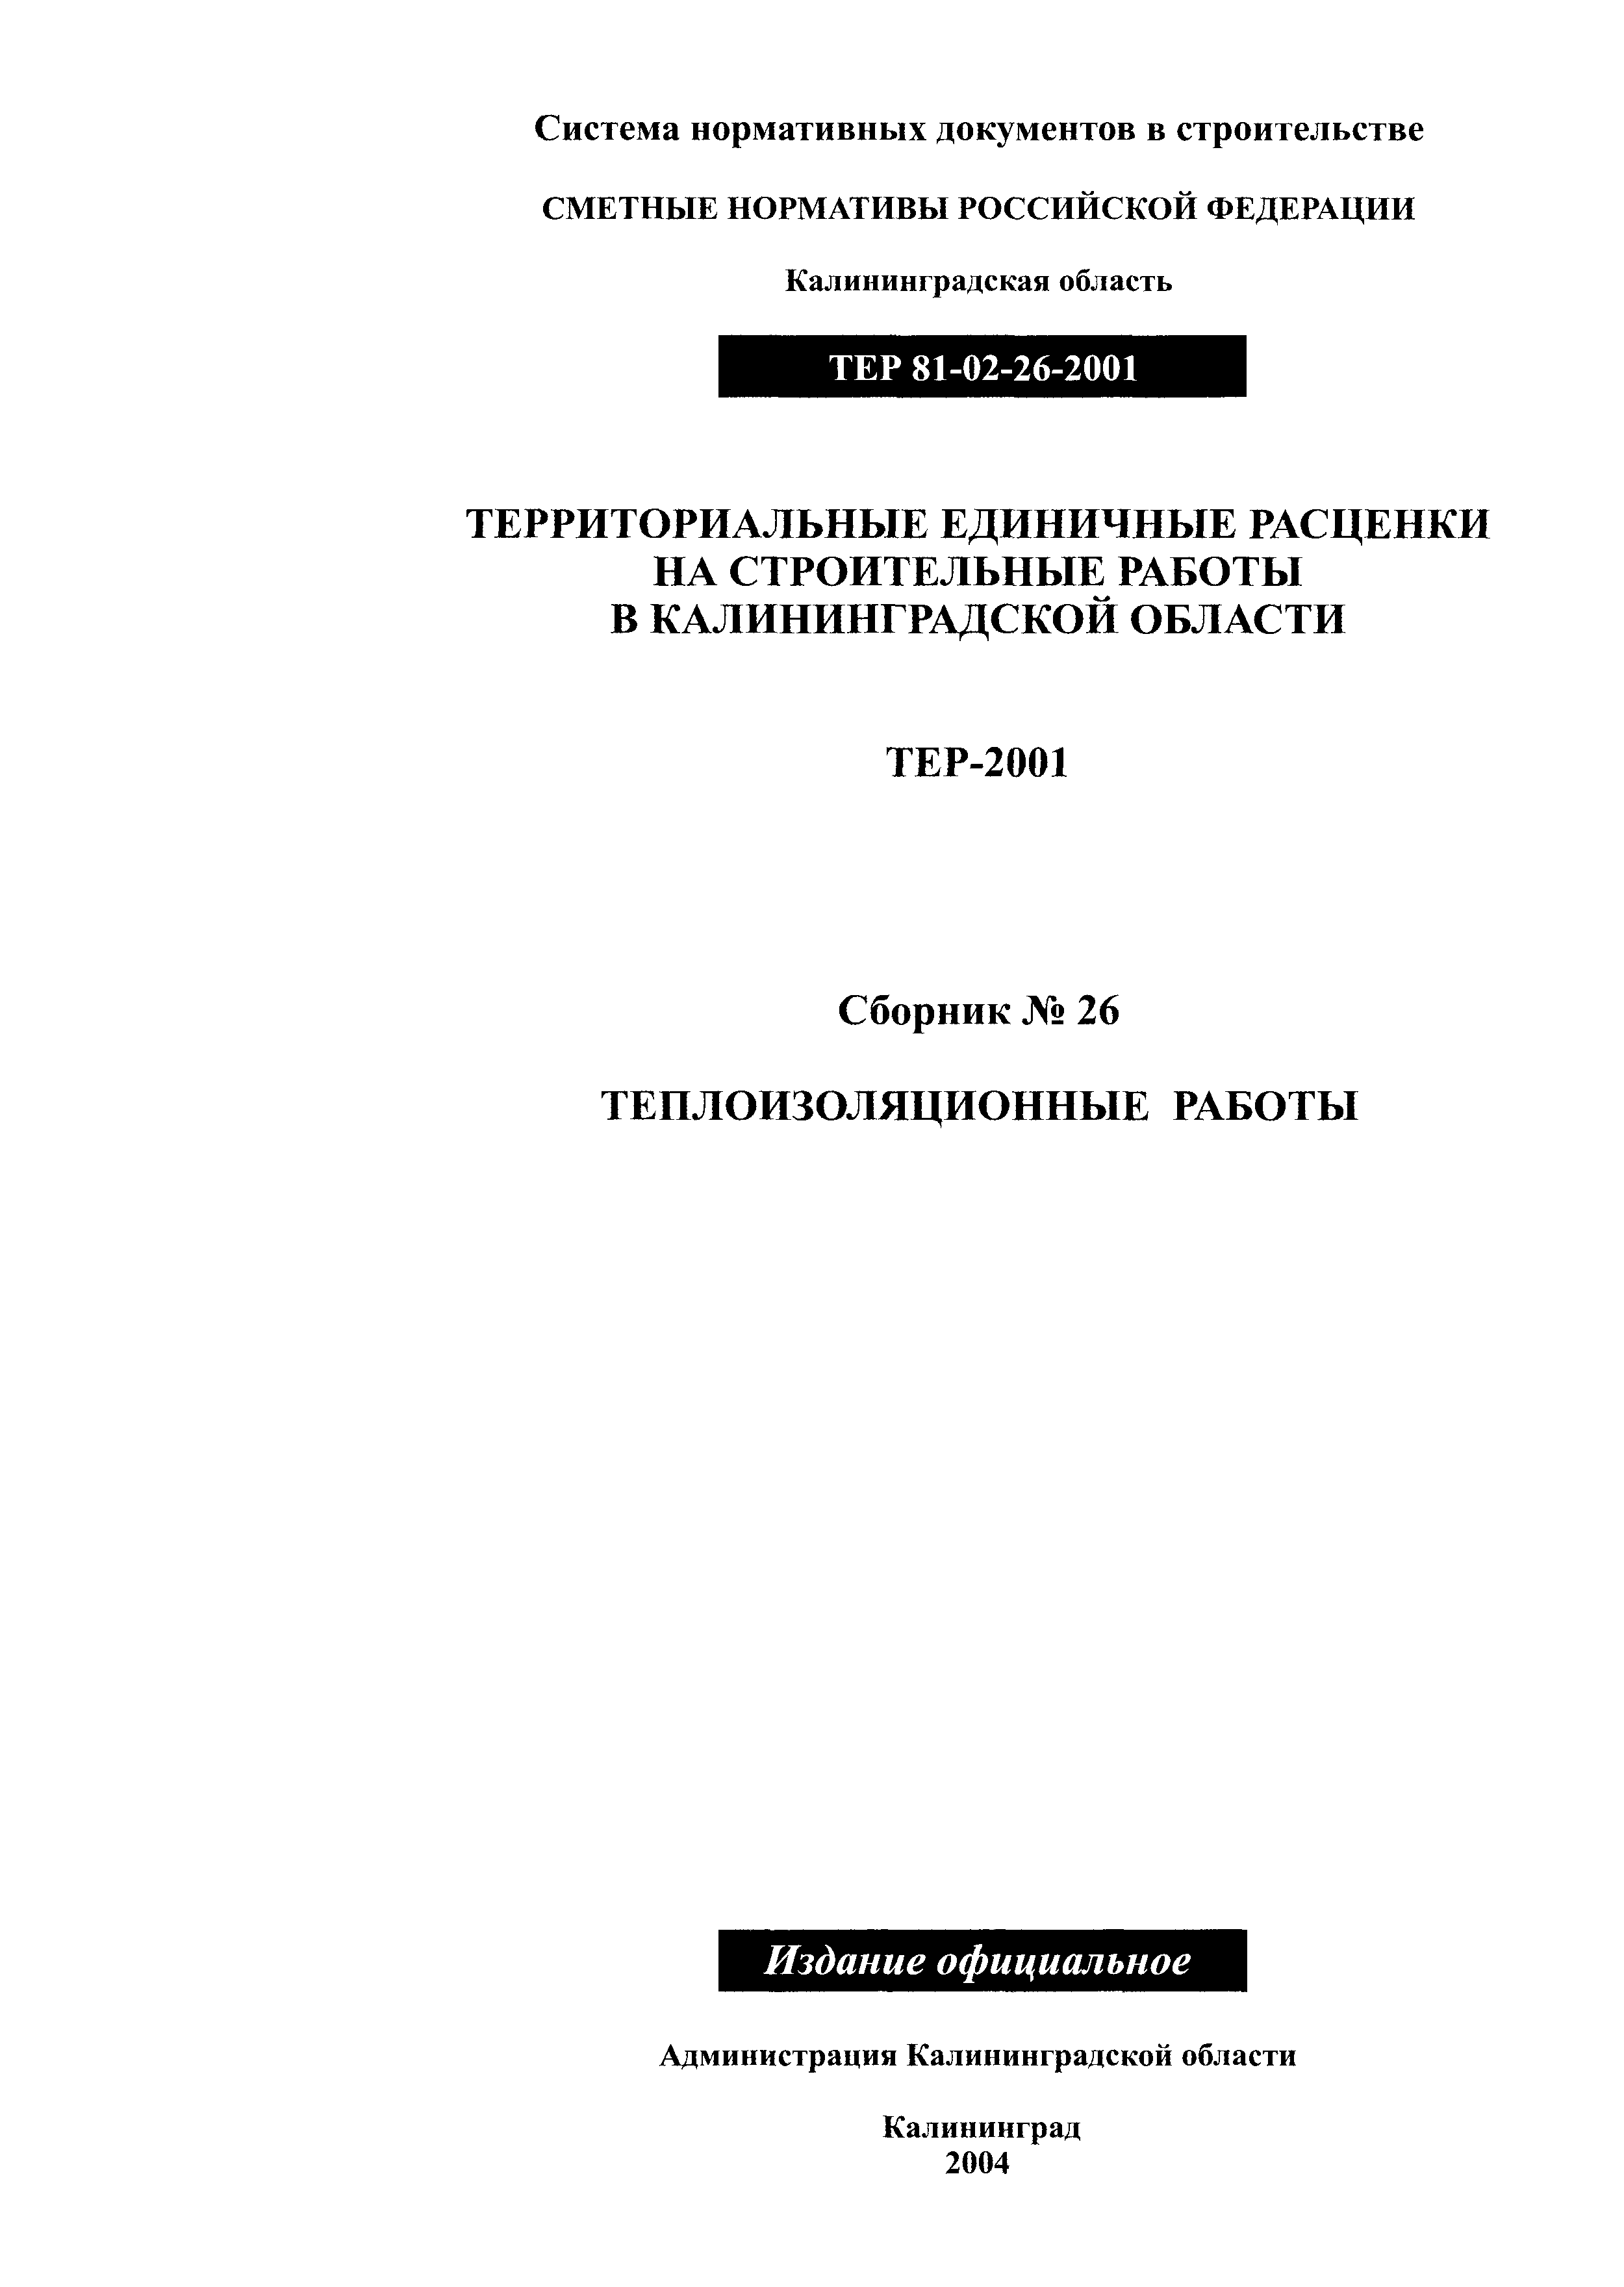 ТЕР Калининградской области 2001-26